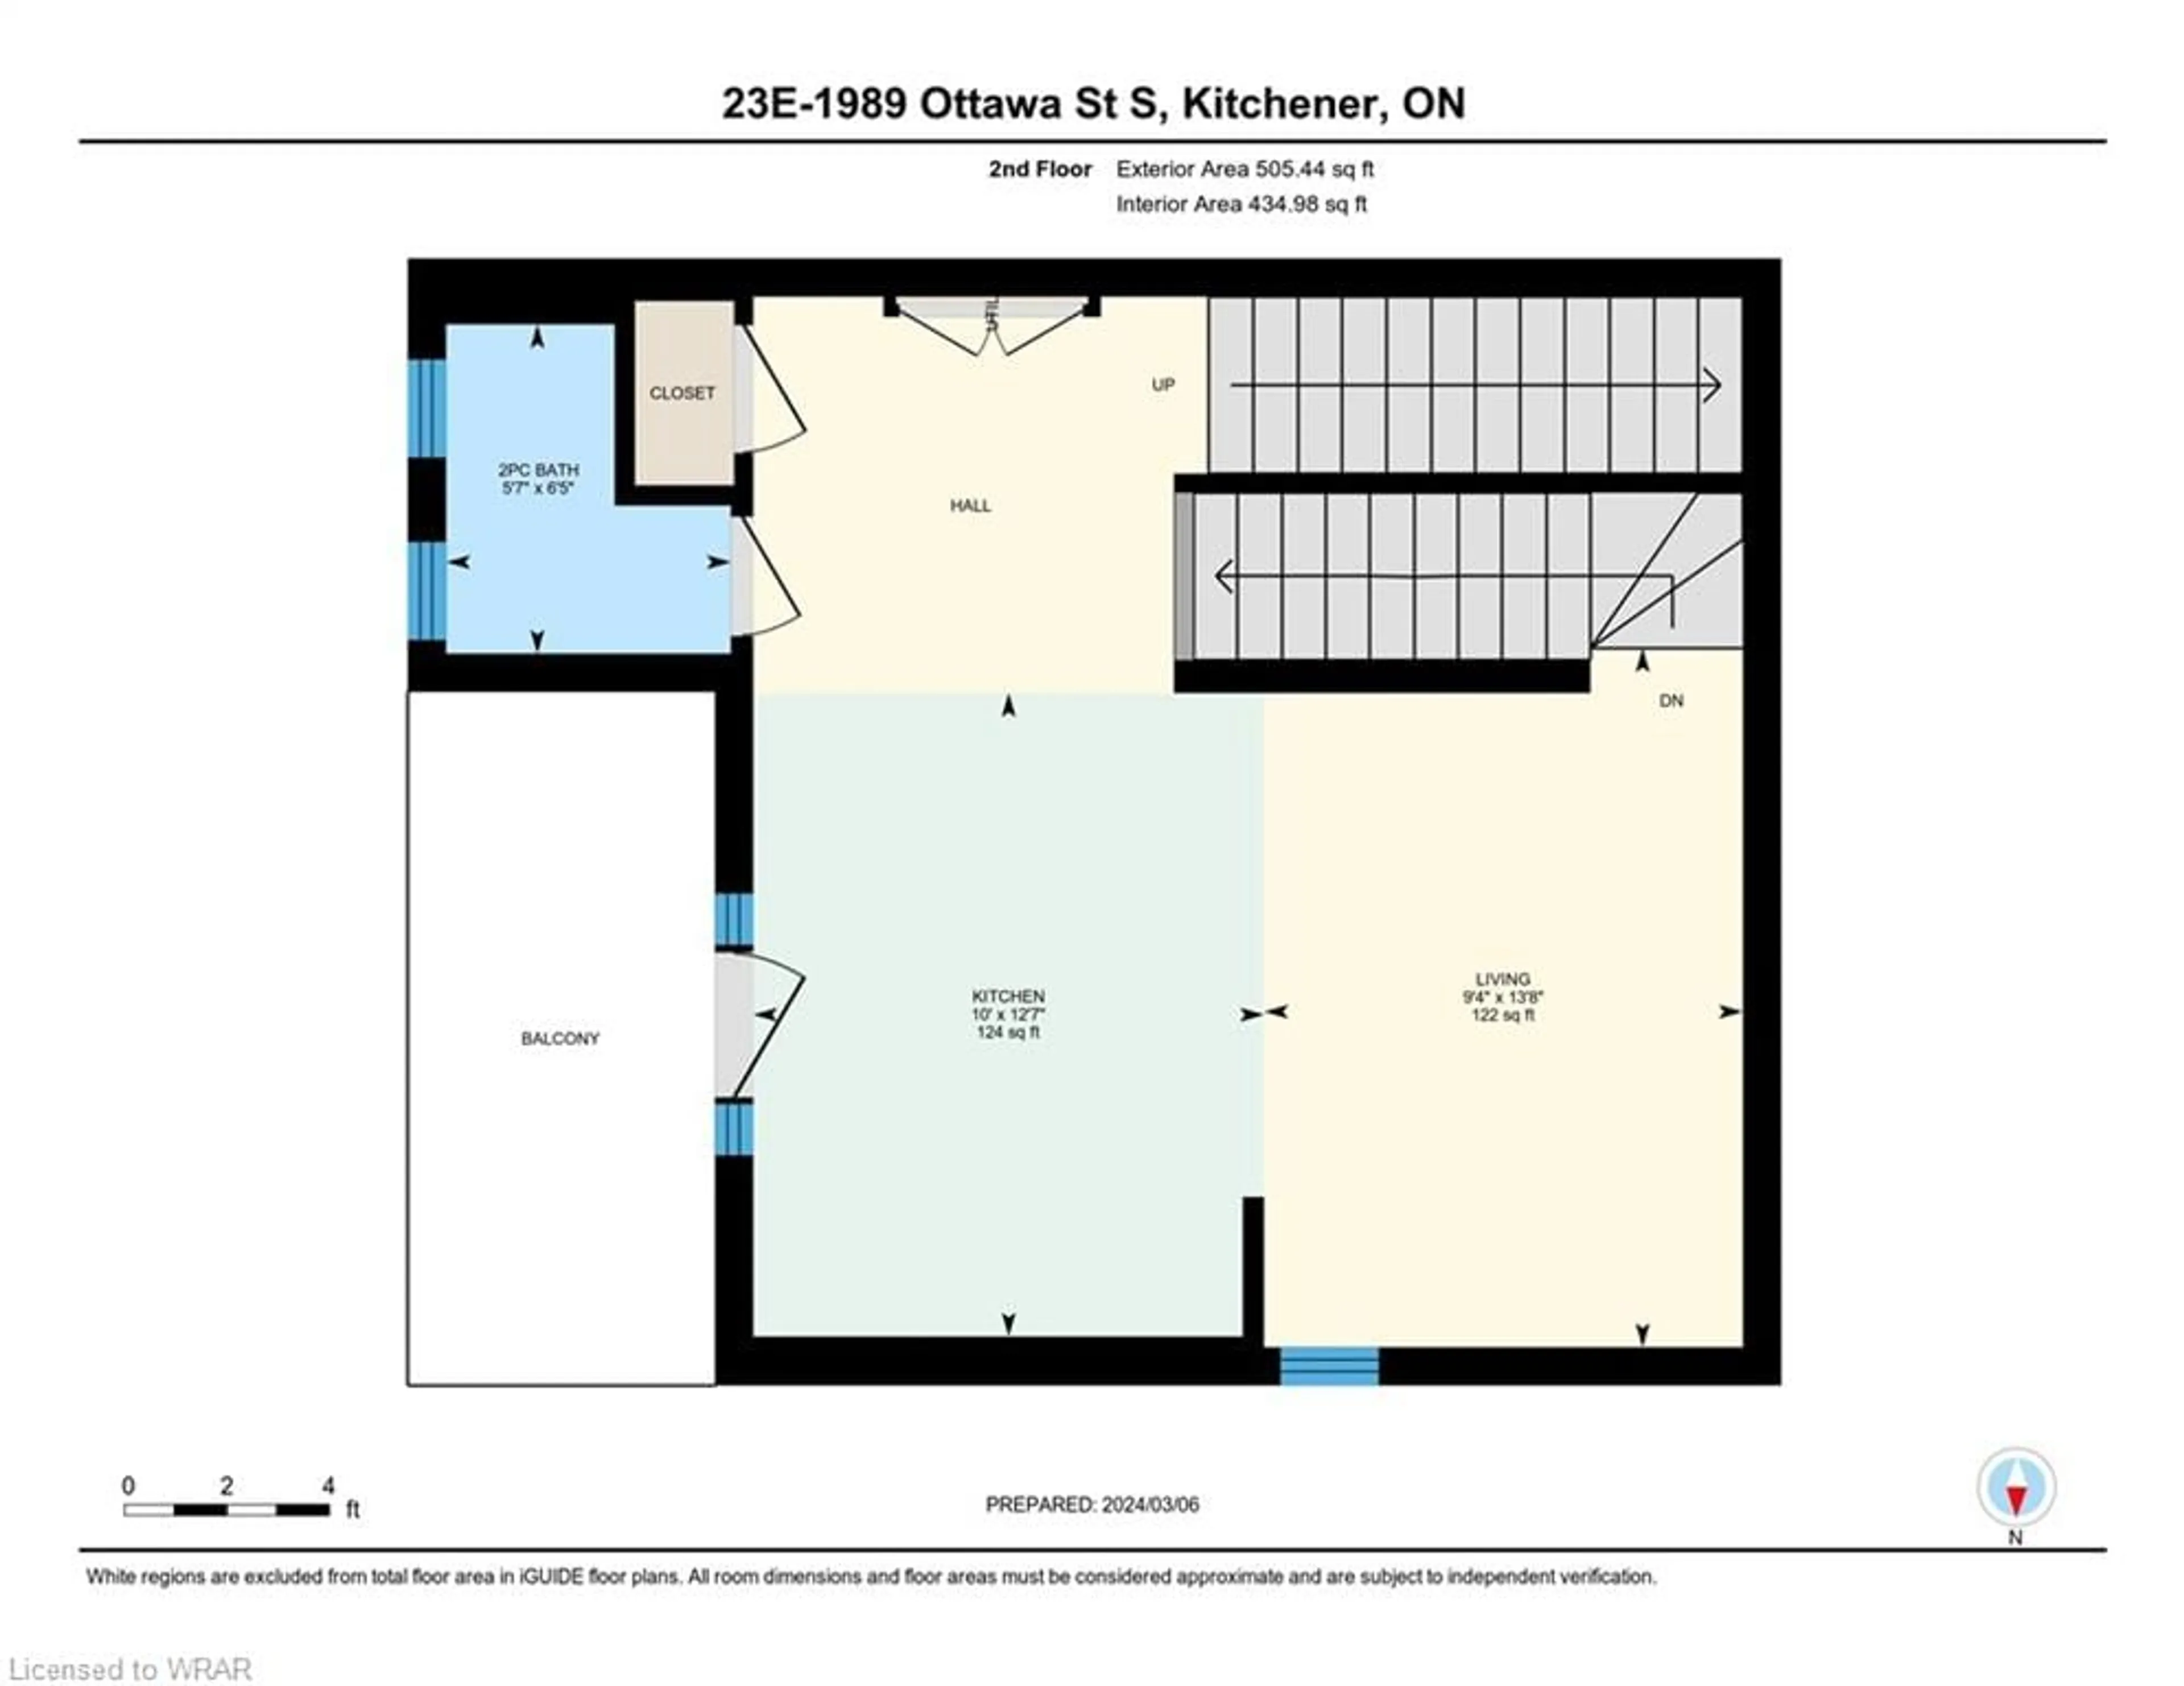 Floor plan for 1989 Ottawa St #23E, Kitchener Ontario N2E 0G7